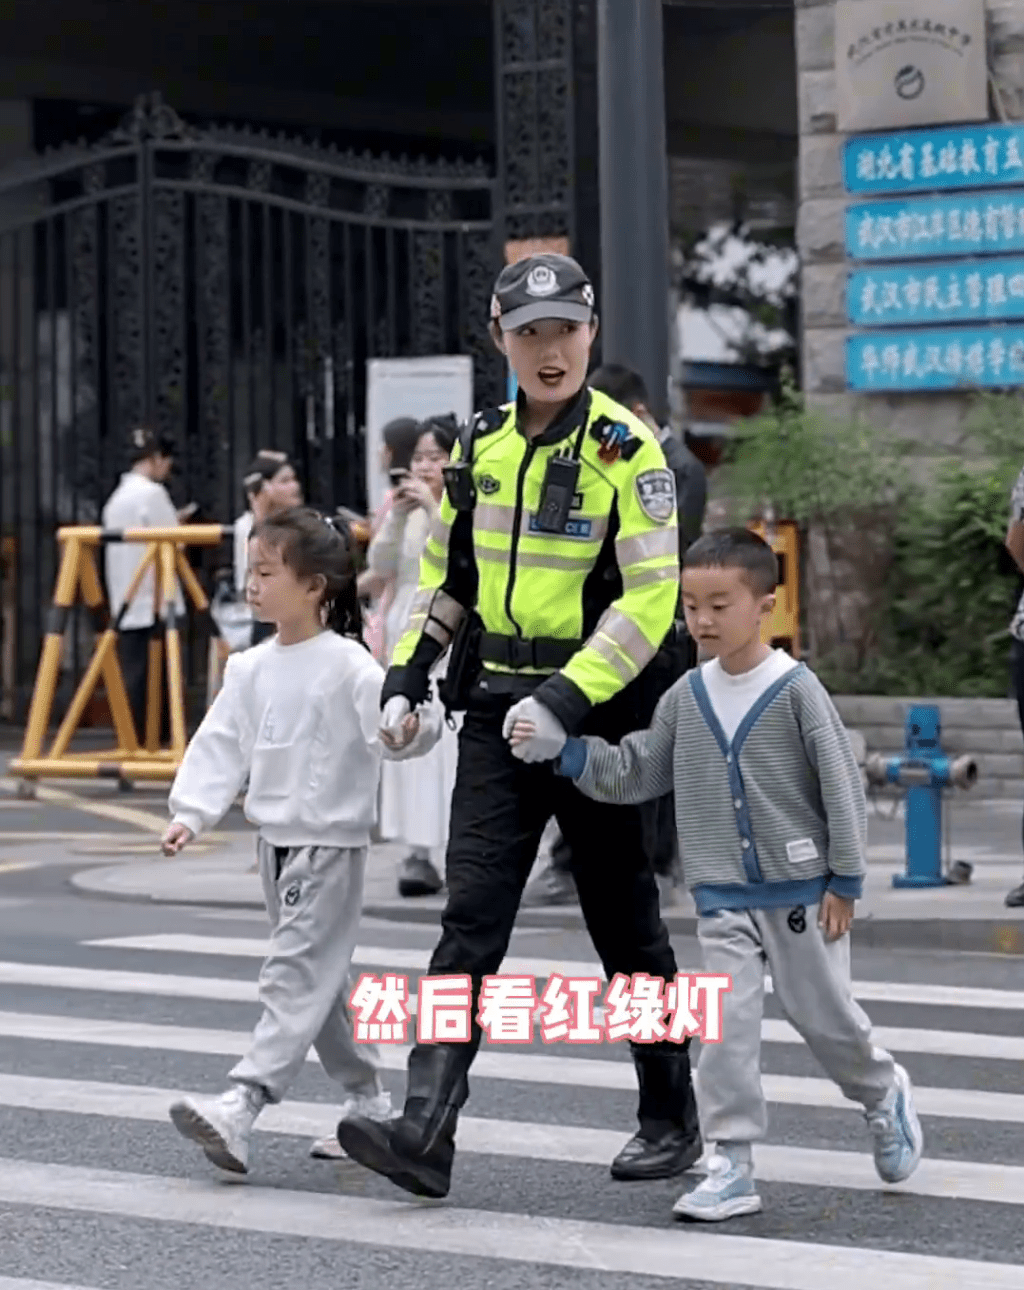 武漢警花溫柔教導小朋友過馬路。